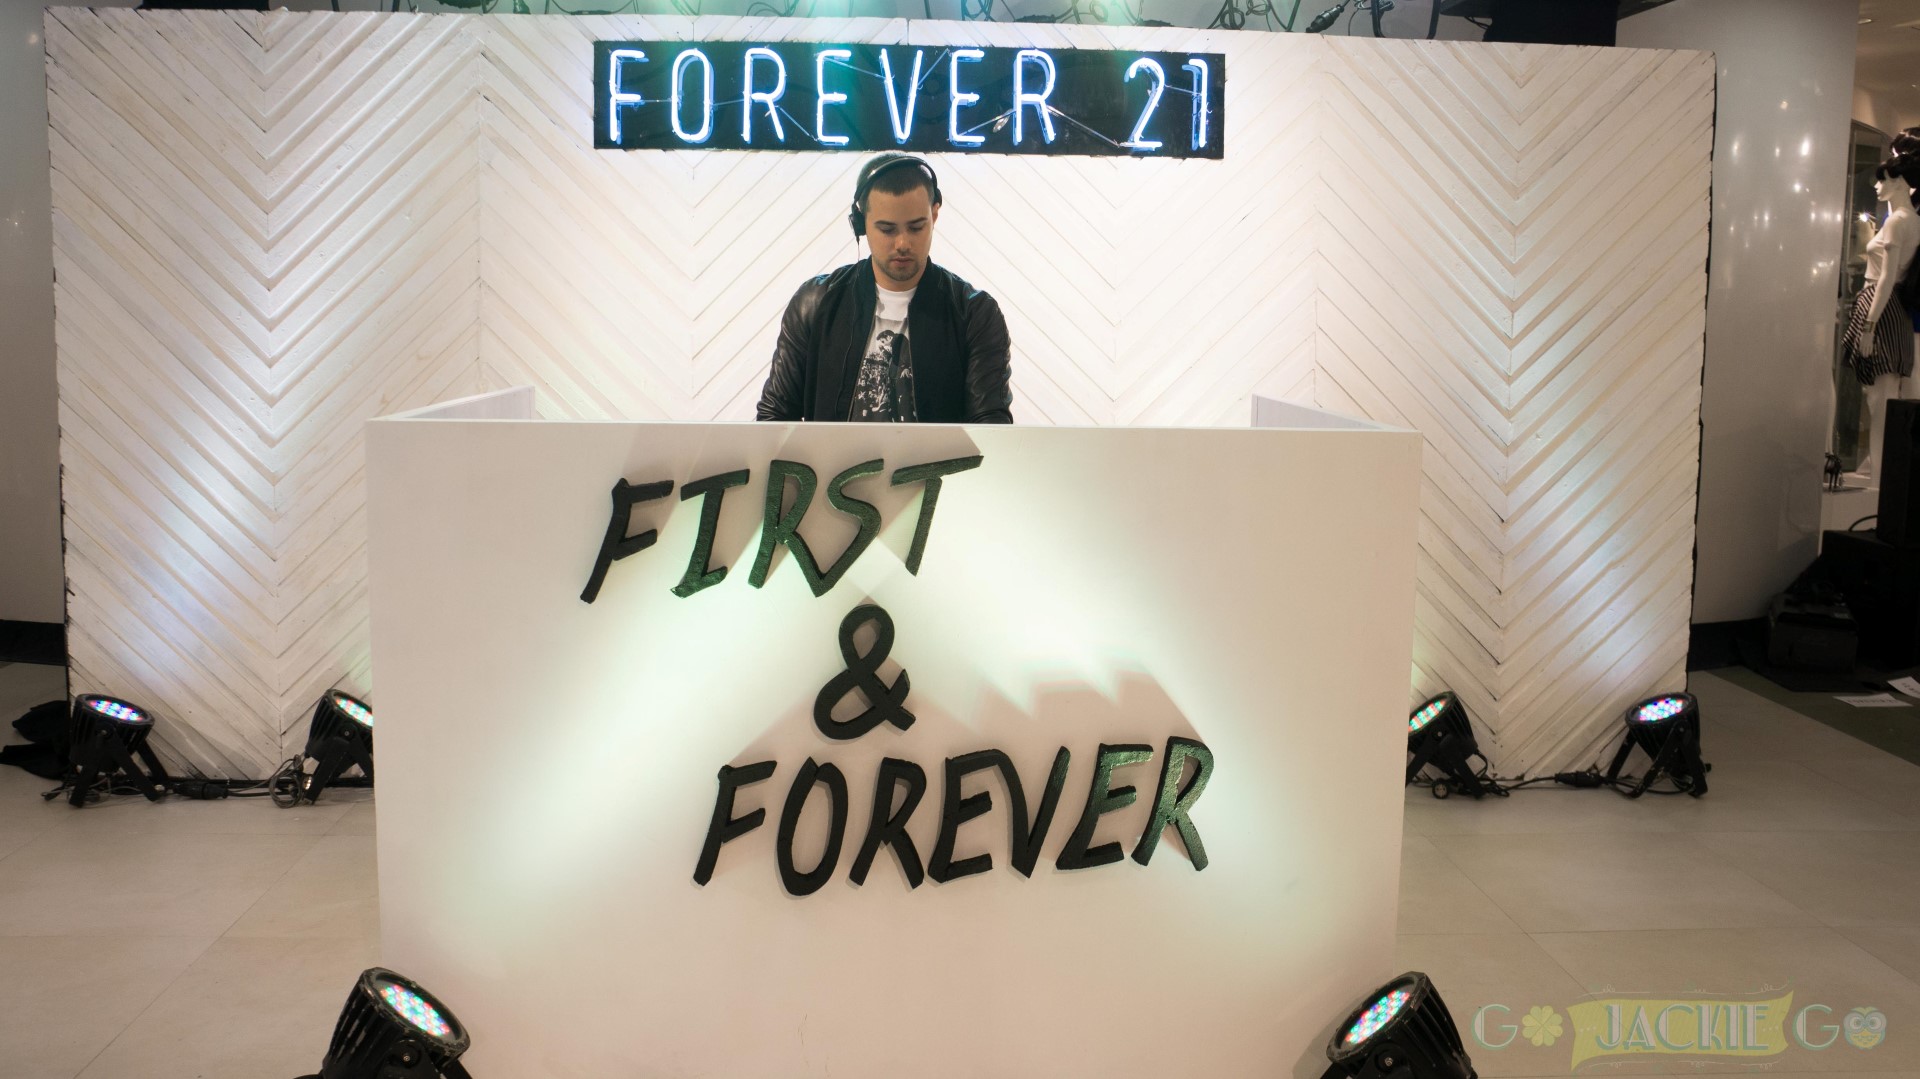 Forever21_FirstAndForever